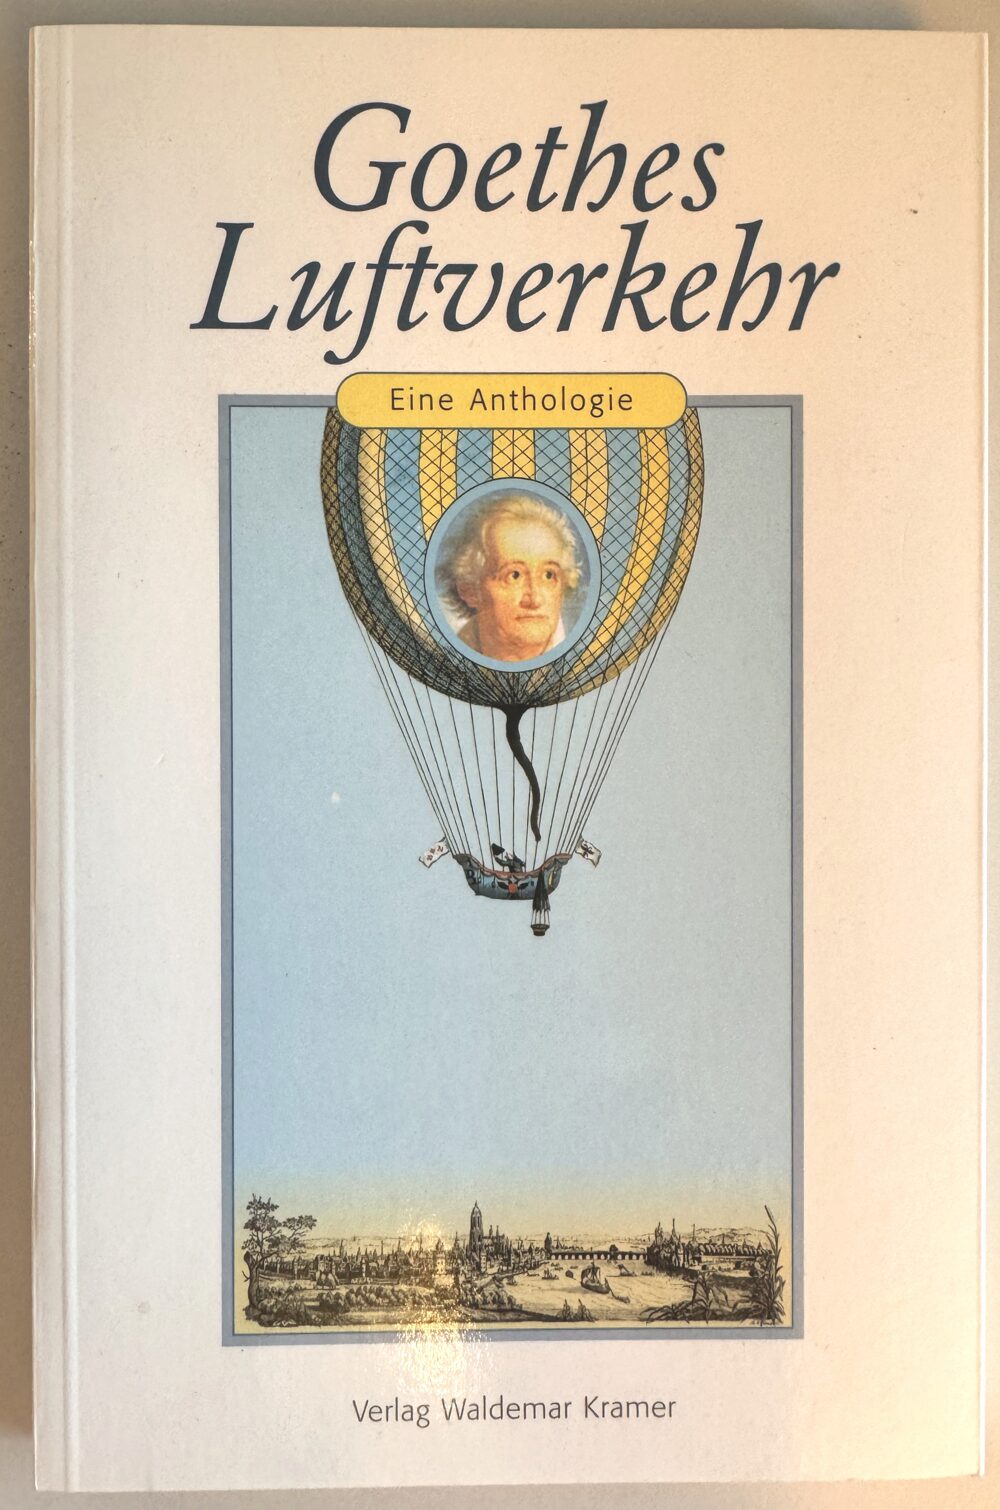 Buch B-678 *Goethes Luftverkehr - Eine Anthologie.